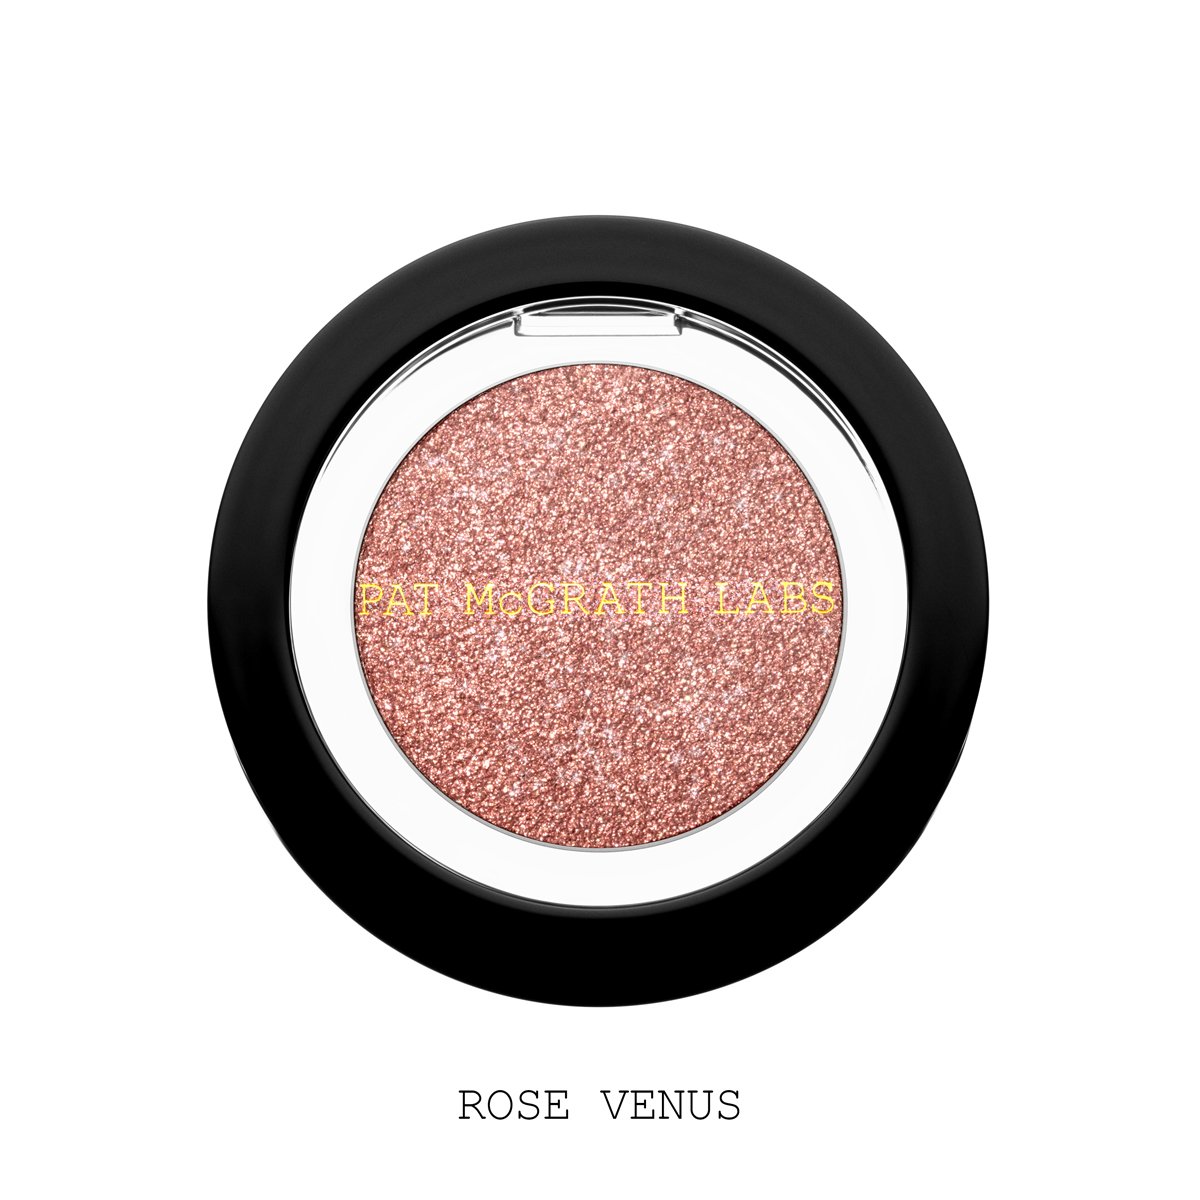 Pat McGrath EYEDOLS™ Metallic Eye Shadow - Rose Venus (Pink Shimmer)